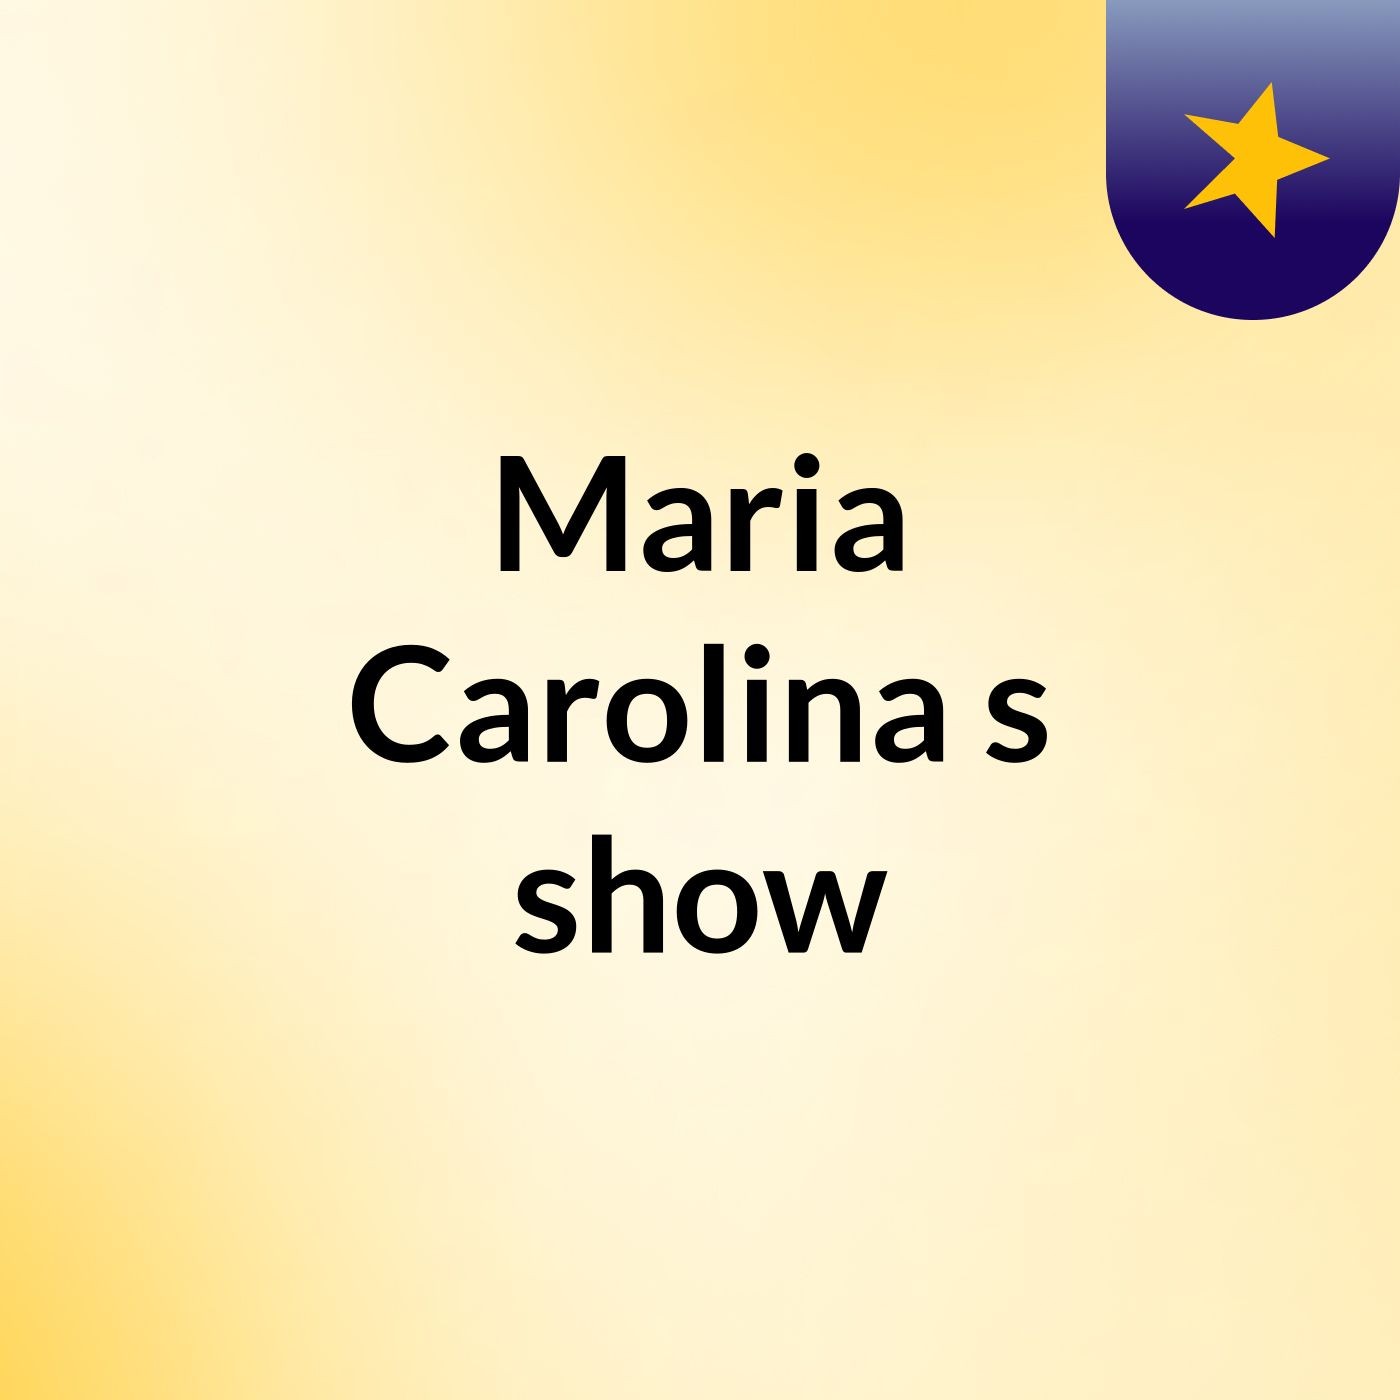 Maria Carolina's show